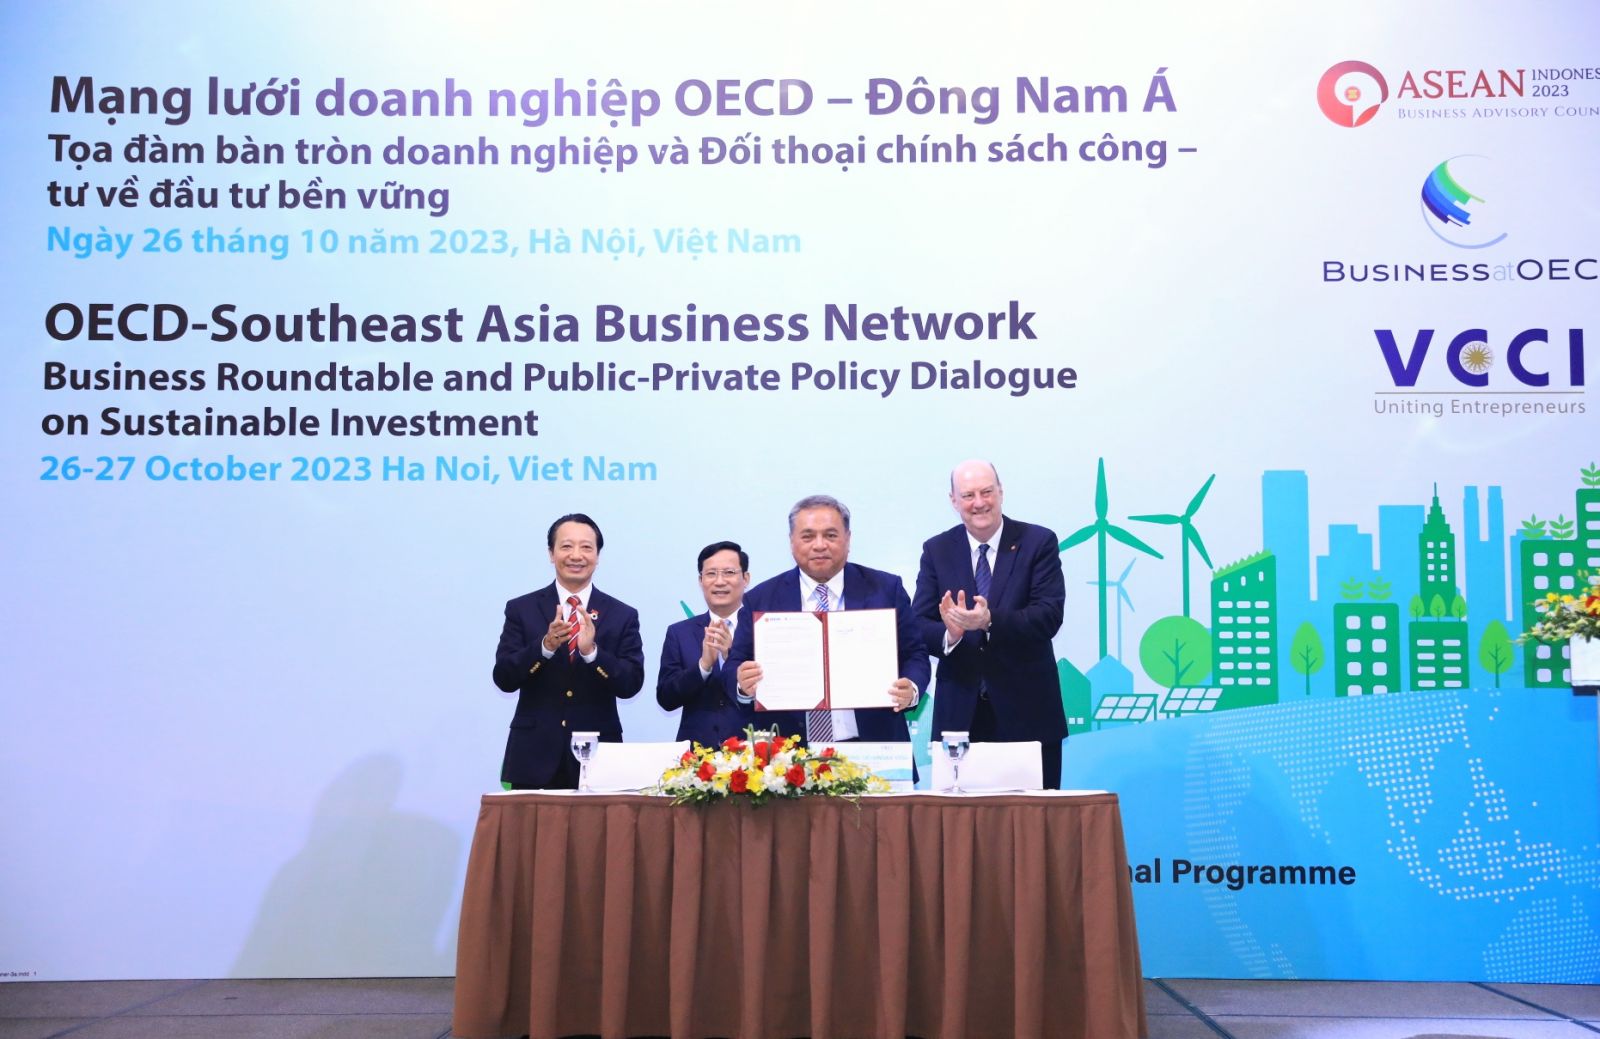 ASEAN BAC và BIAC đã ký Biên bản ghi nhớ hợp tác nhằm tạo khuôn khổ cho tăng cường kết nối, nâng cao hiệu quả hoạt động của Mạng lưới doanh nghiệp OECD – Đông Nam Á